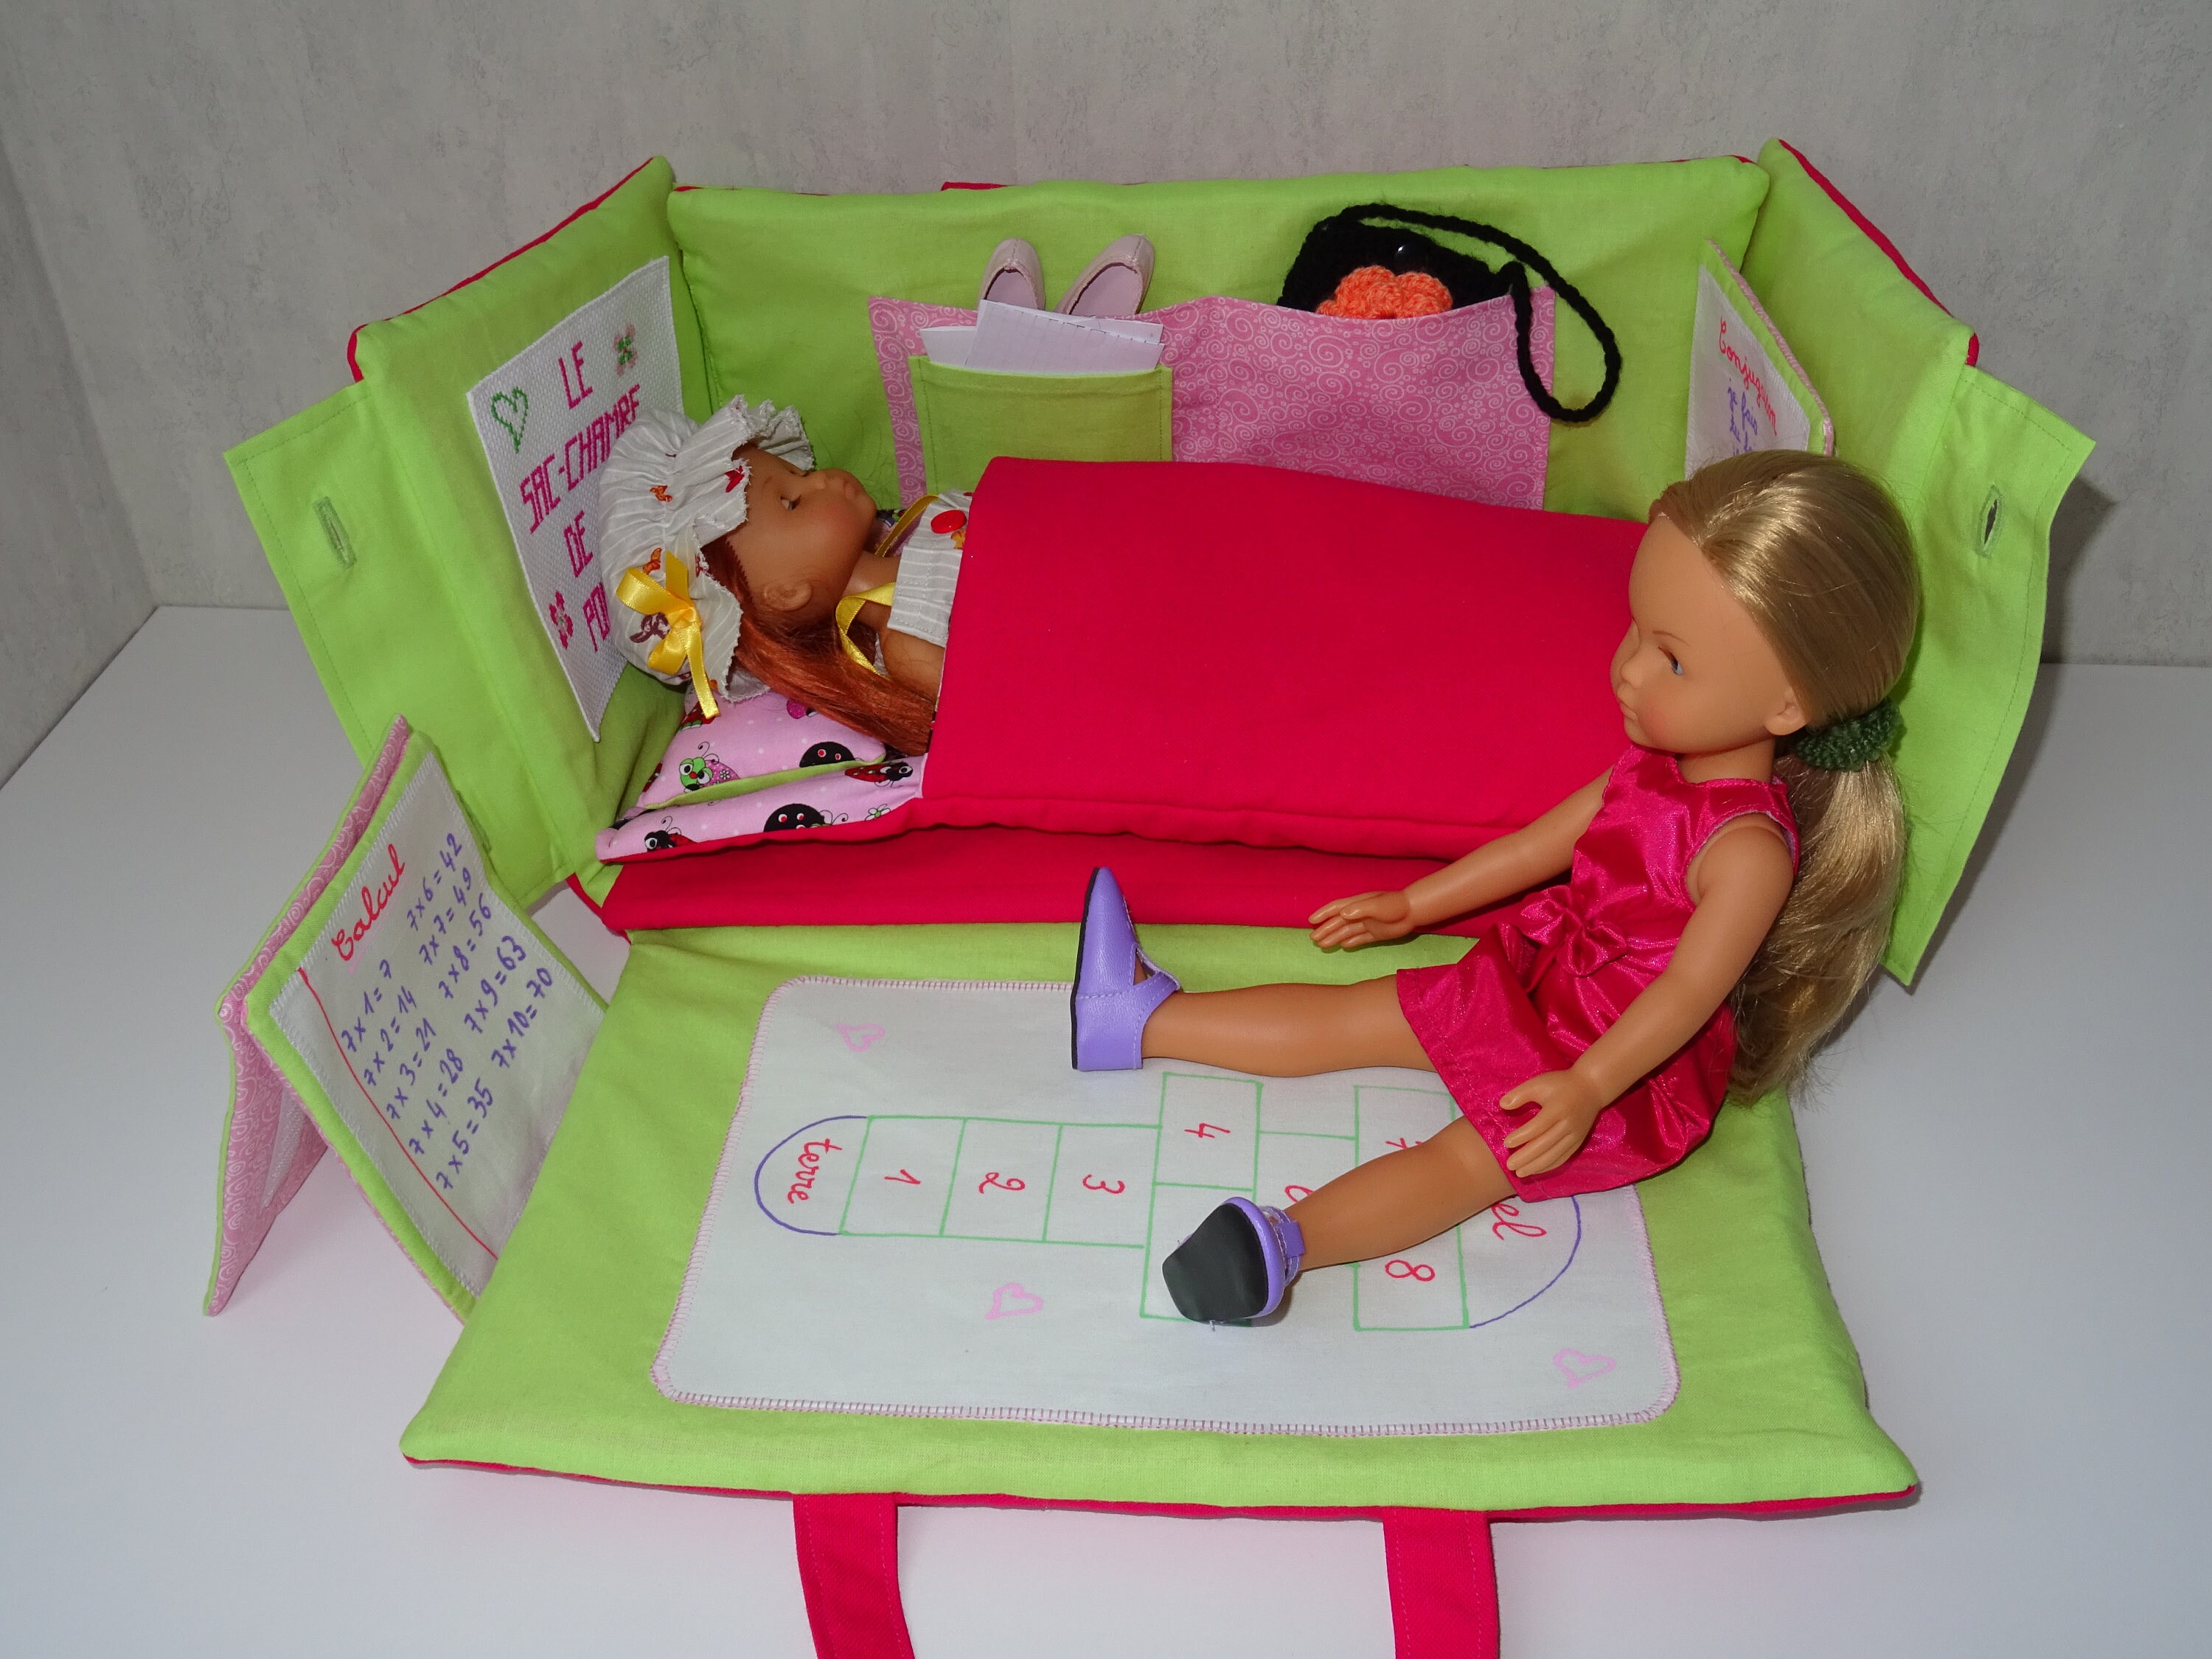 TUTO Lit de bébé pour Barbie - DIY Baby's bed for doll 